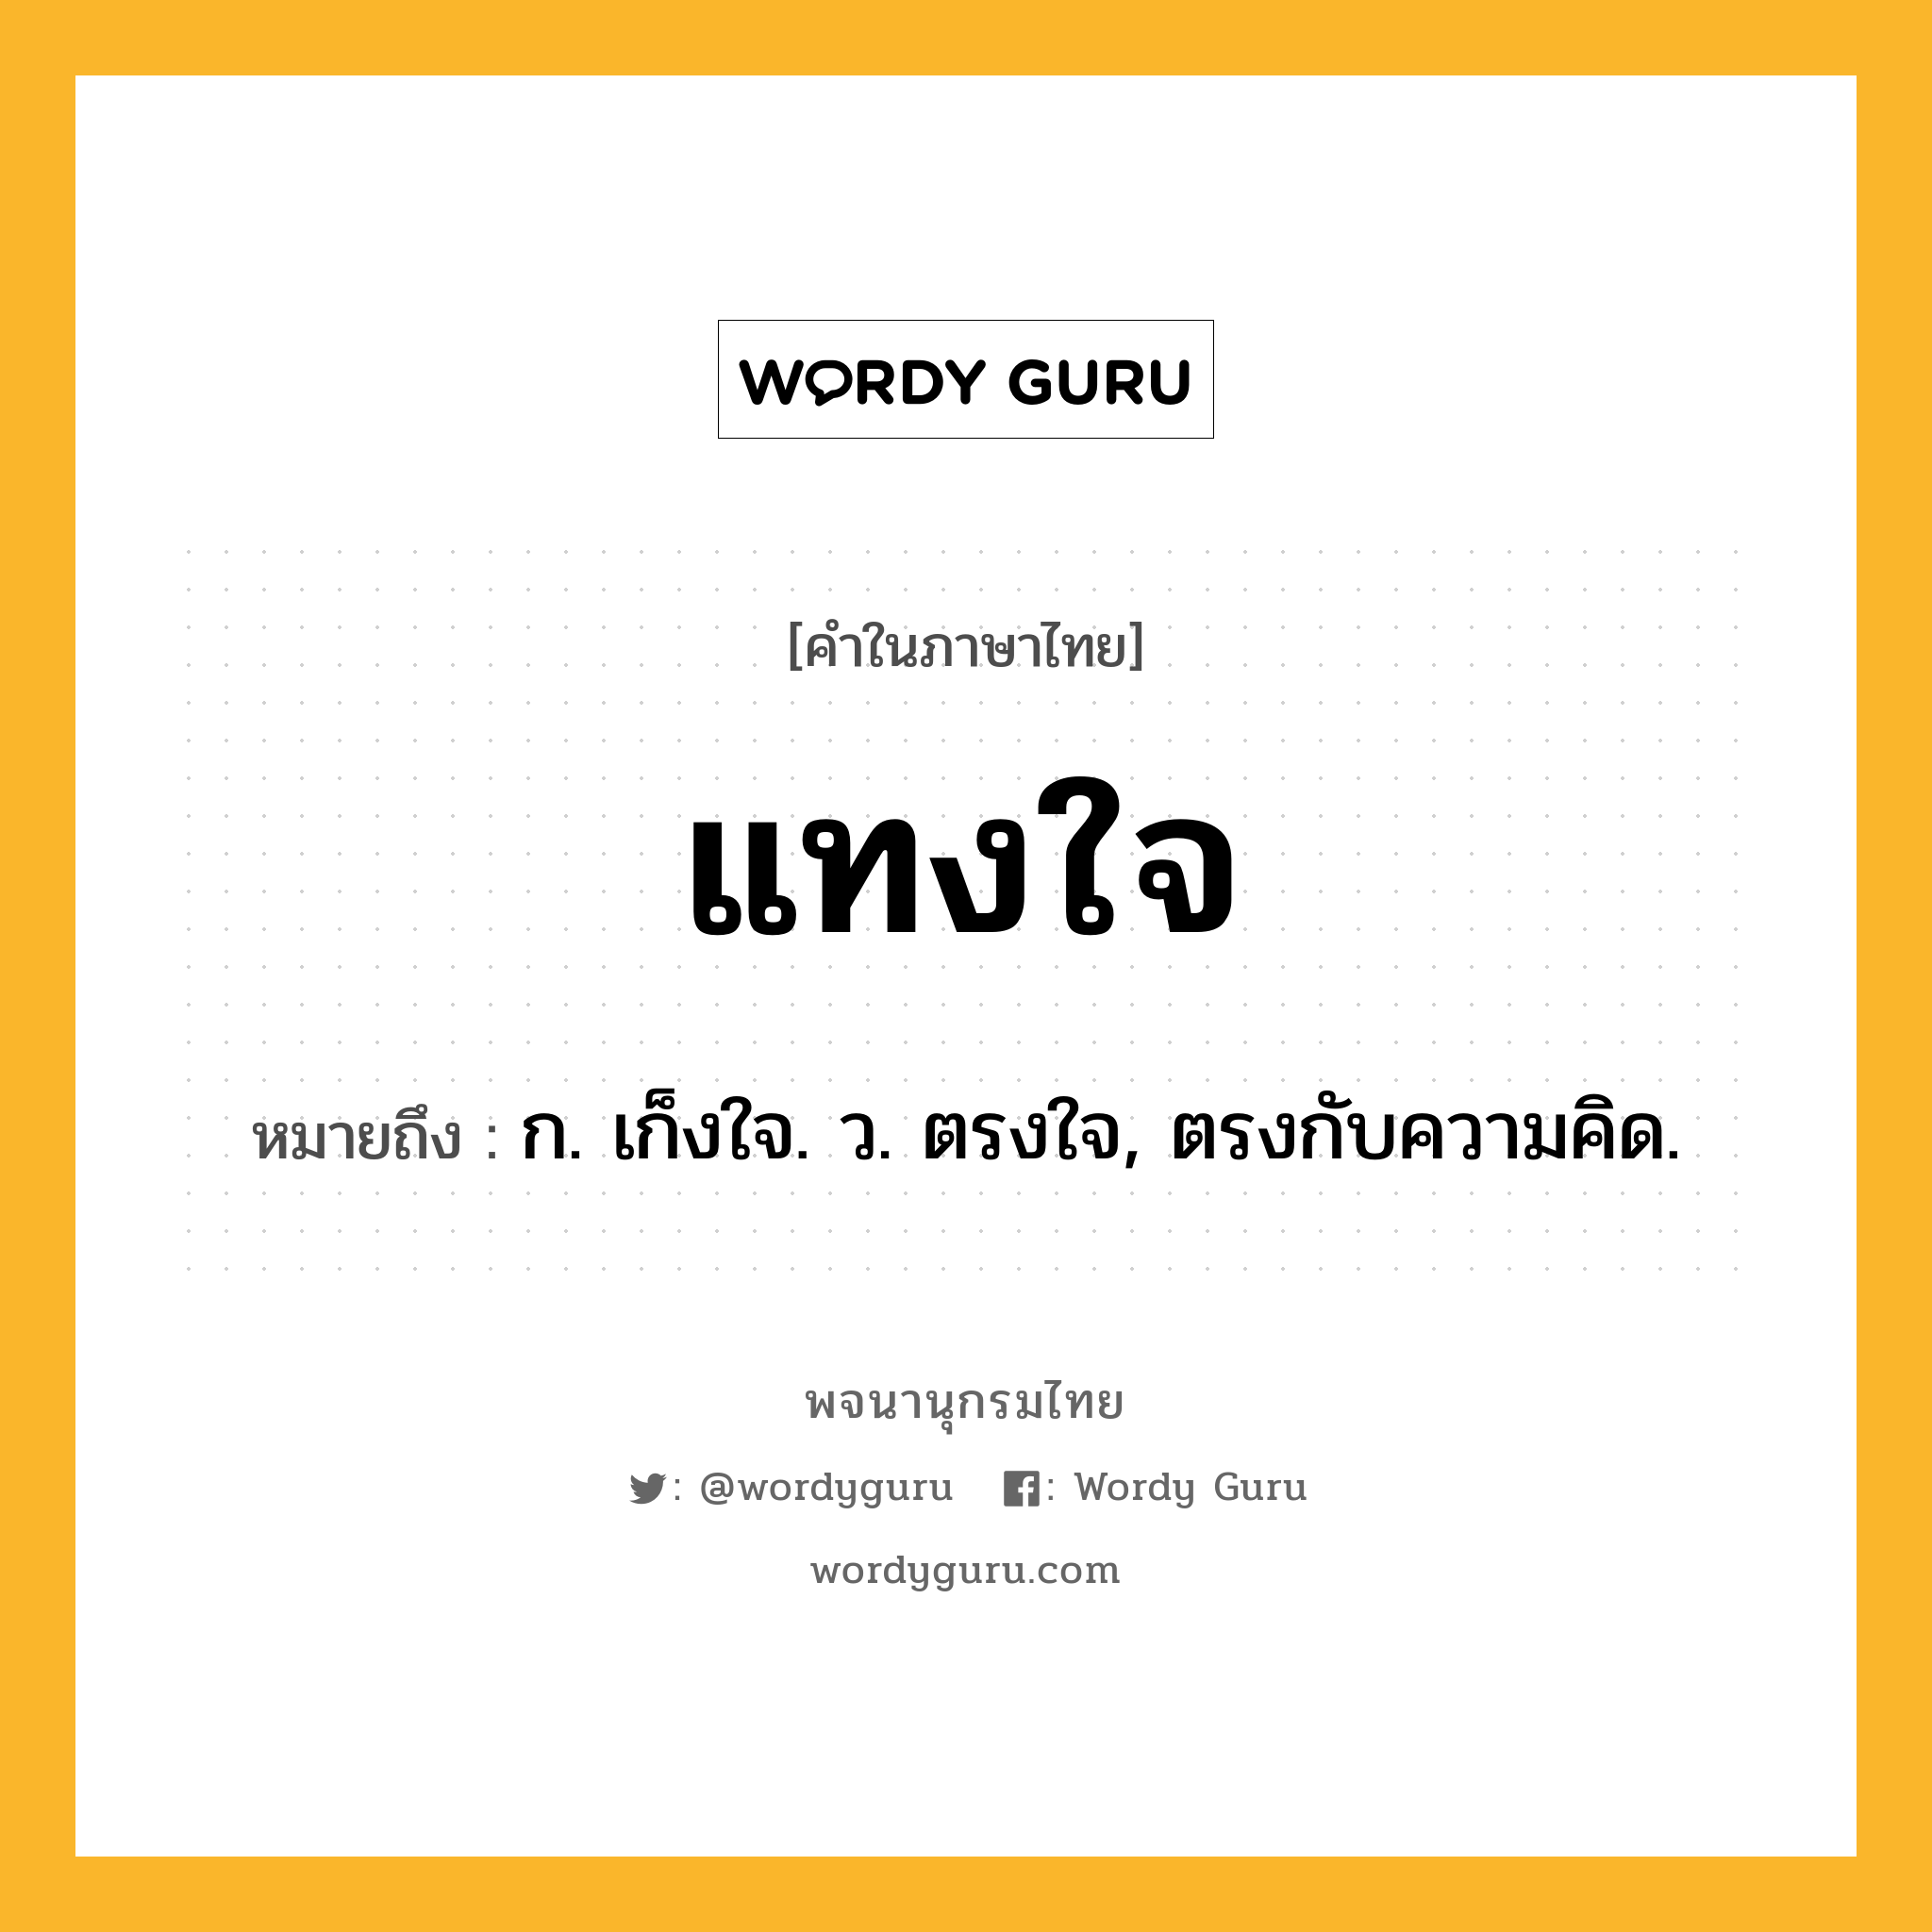 แทงใจ หมายถึงอะไร?, คำในภาษาไทย แทงใจ หมายถึง ก. เก็งใจ. ว. ตรงใจ, ตรงกับความคิด.